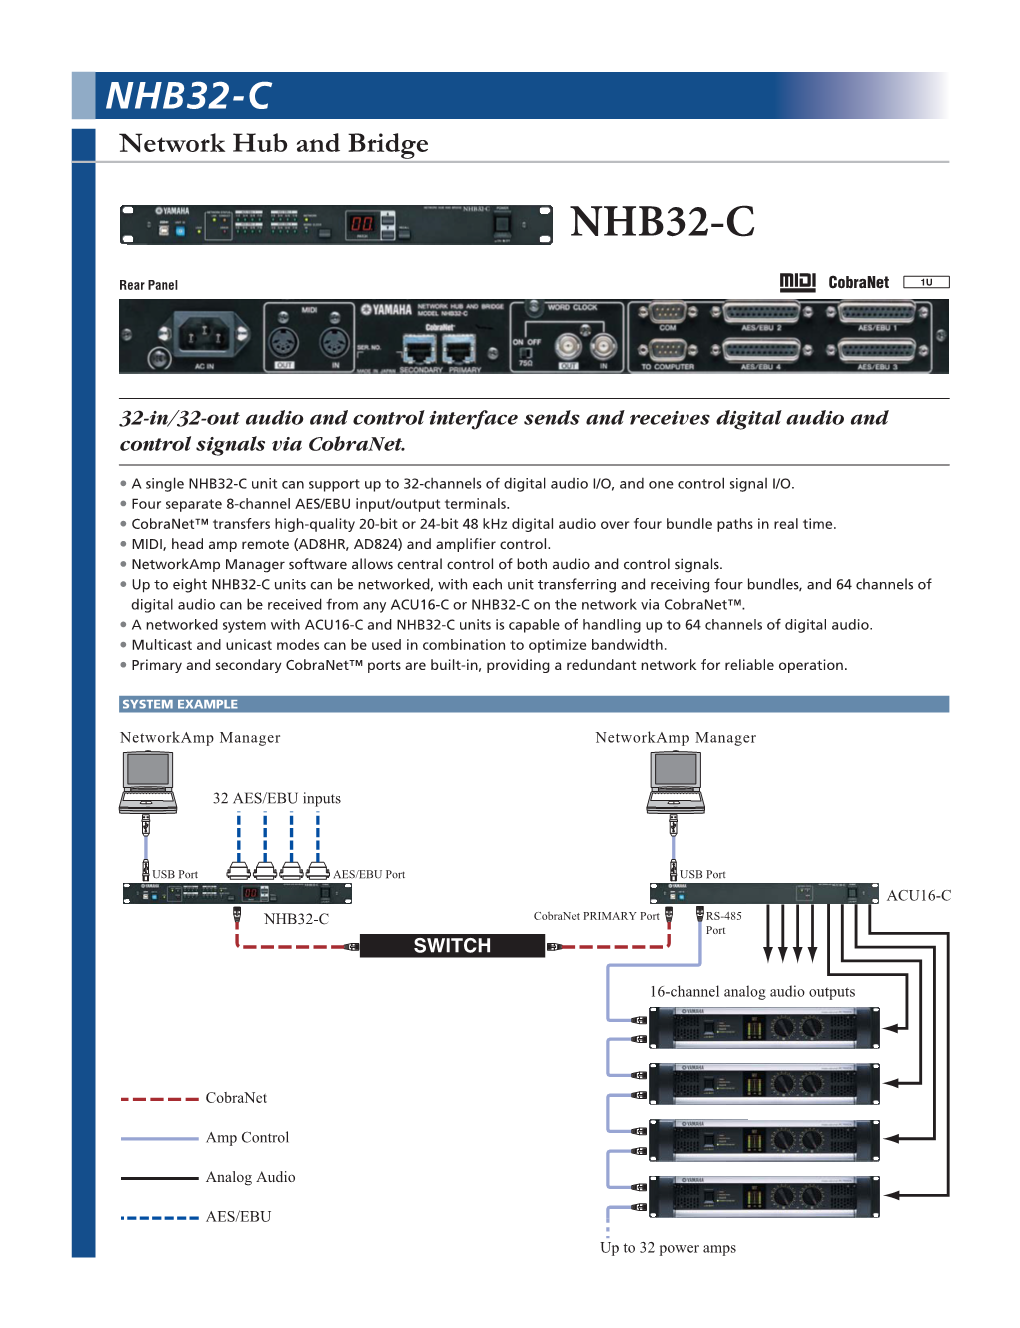 NHB32-C Network Hub and Bridge NHB32-C